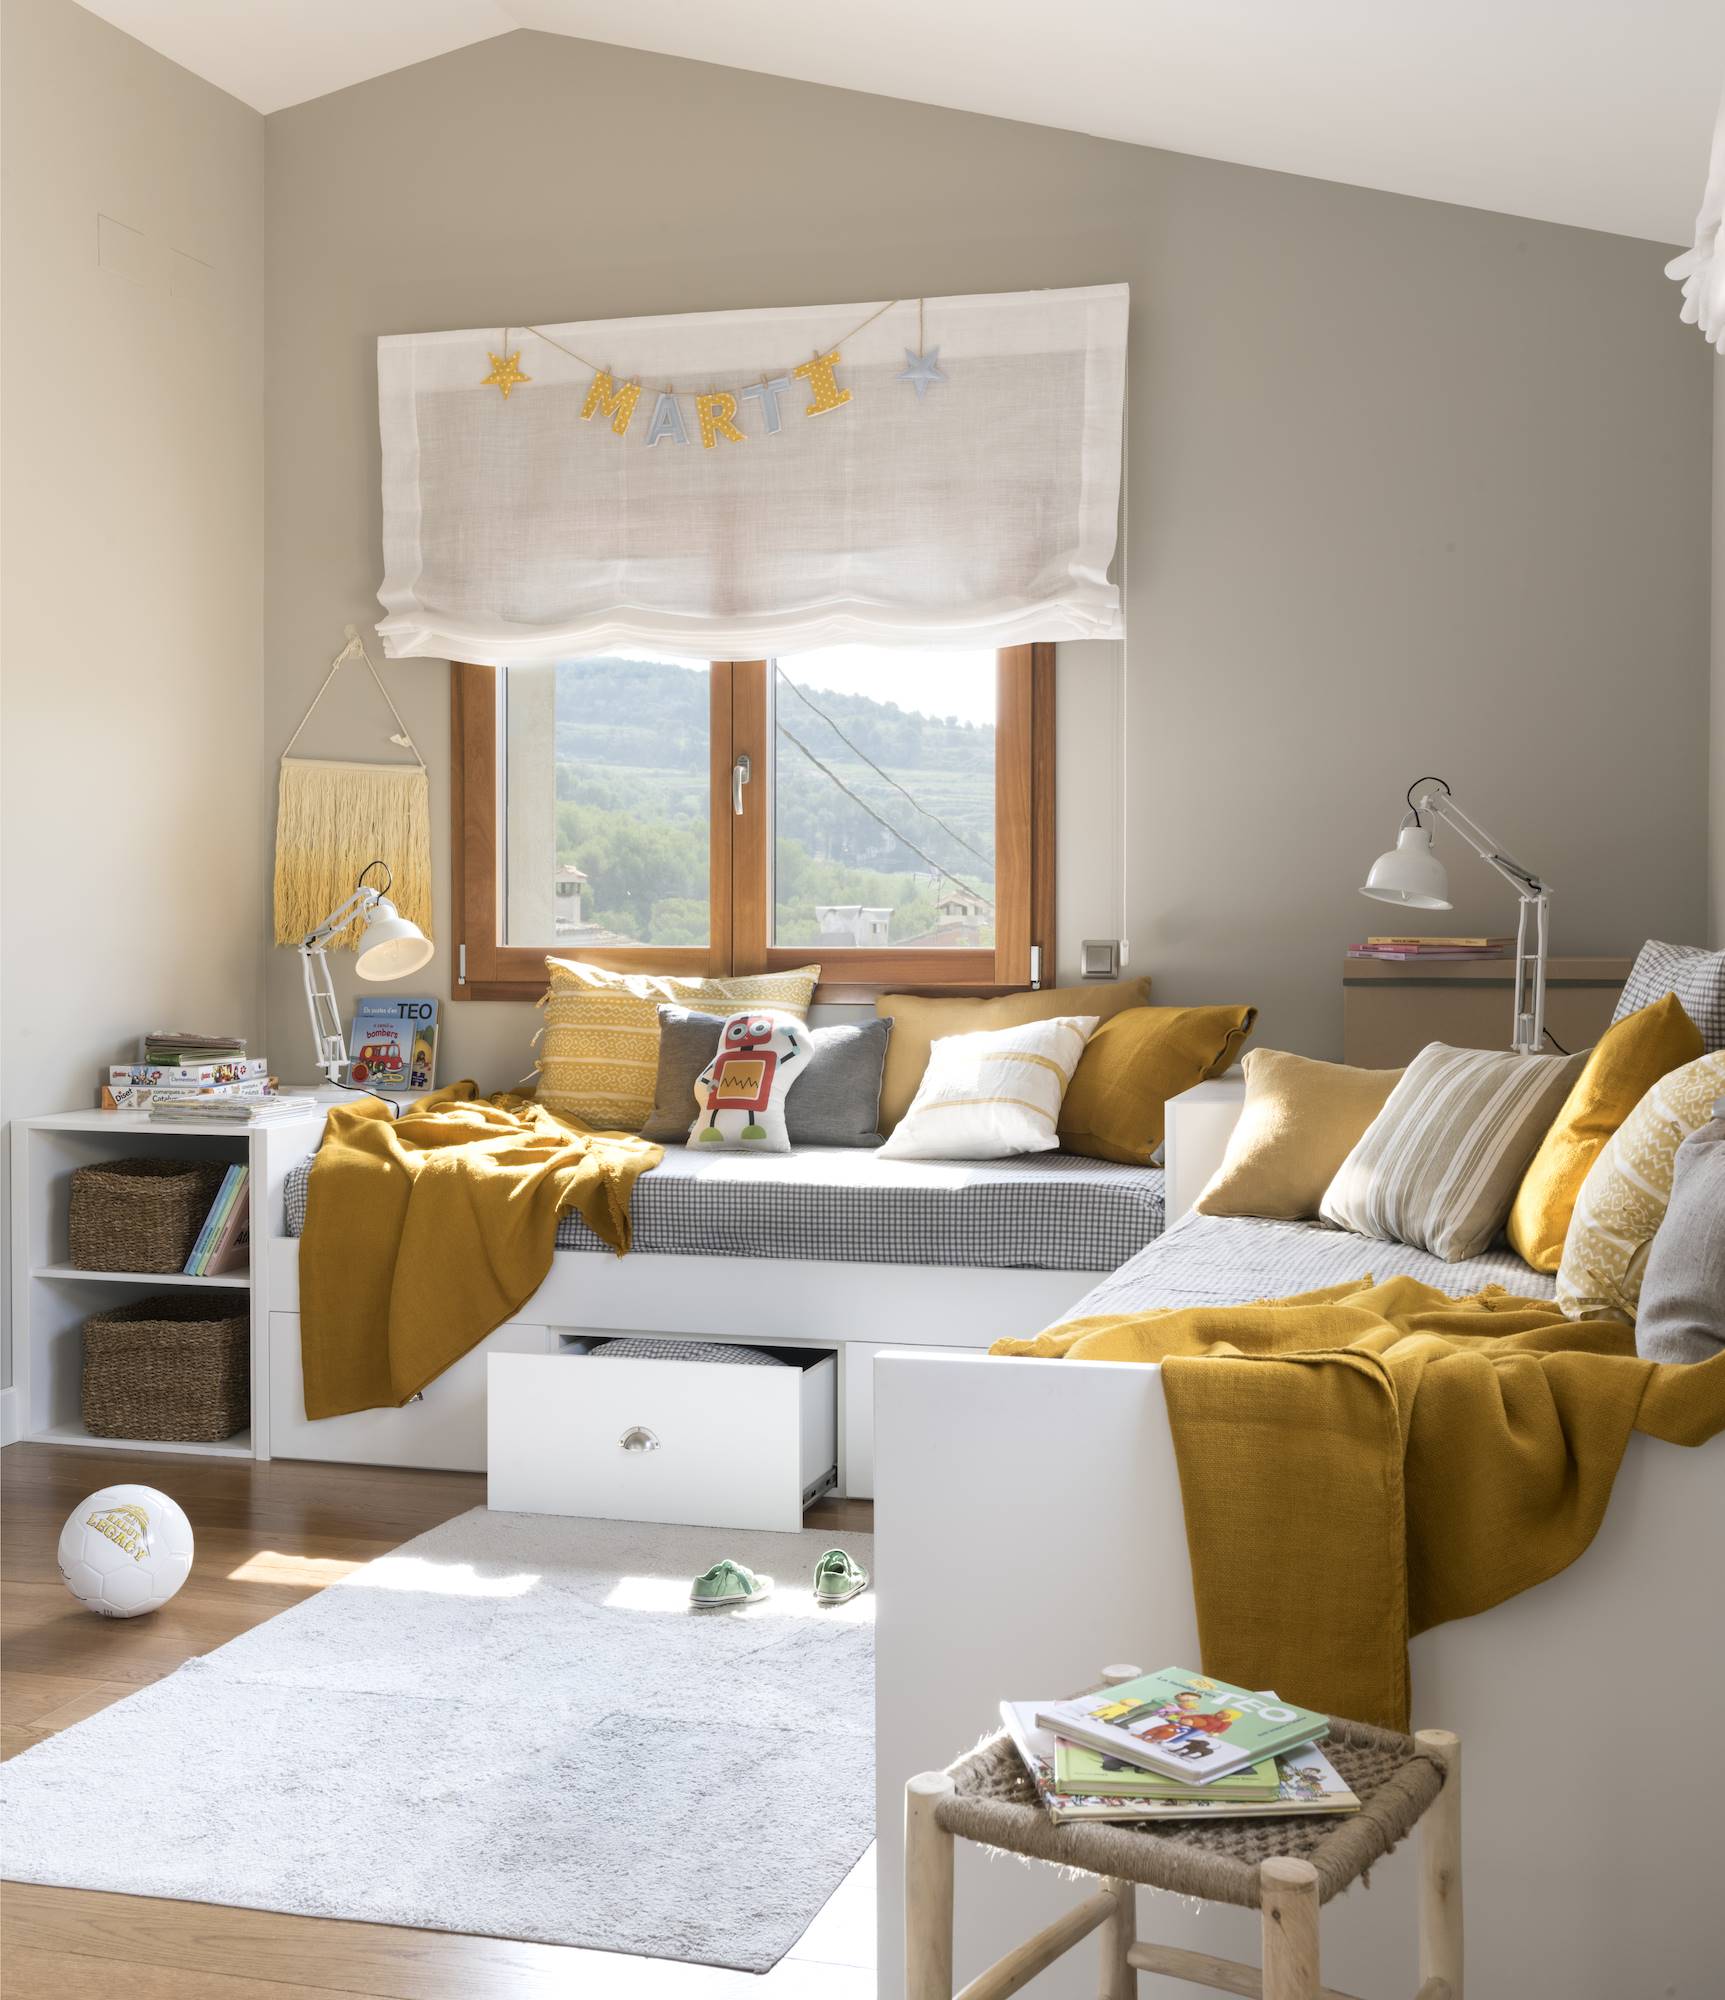 Habitación infantil decorada color en gris y ocre.